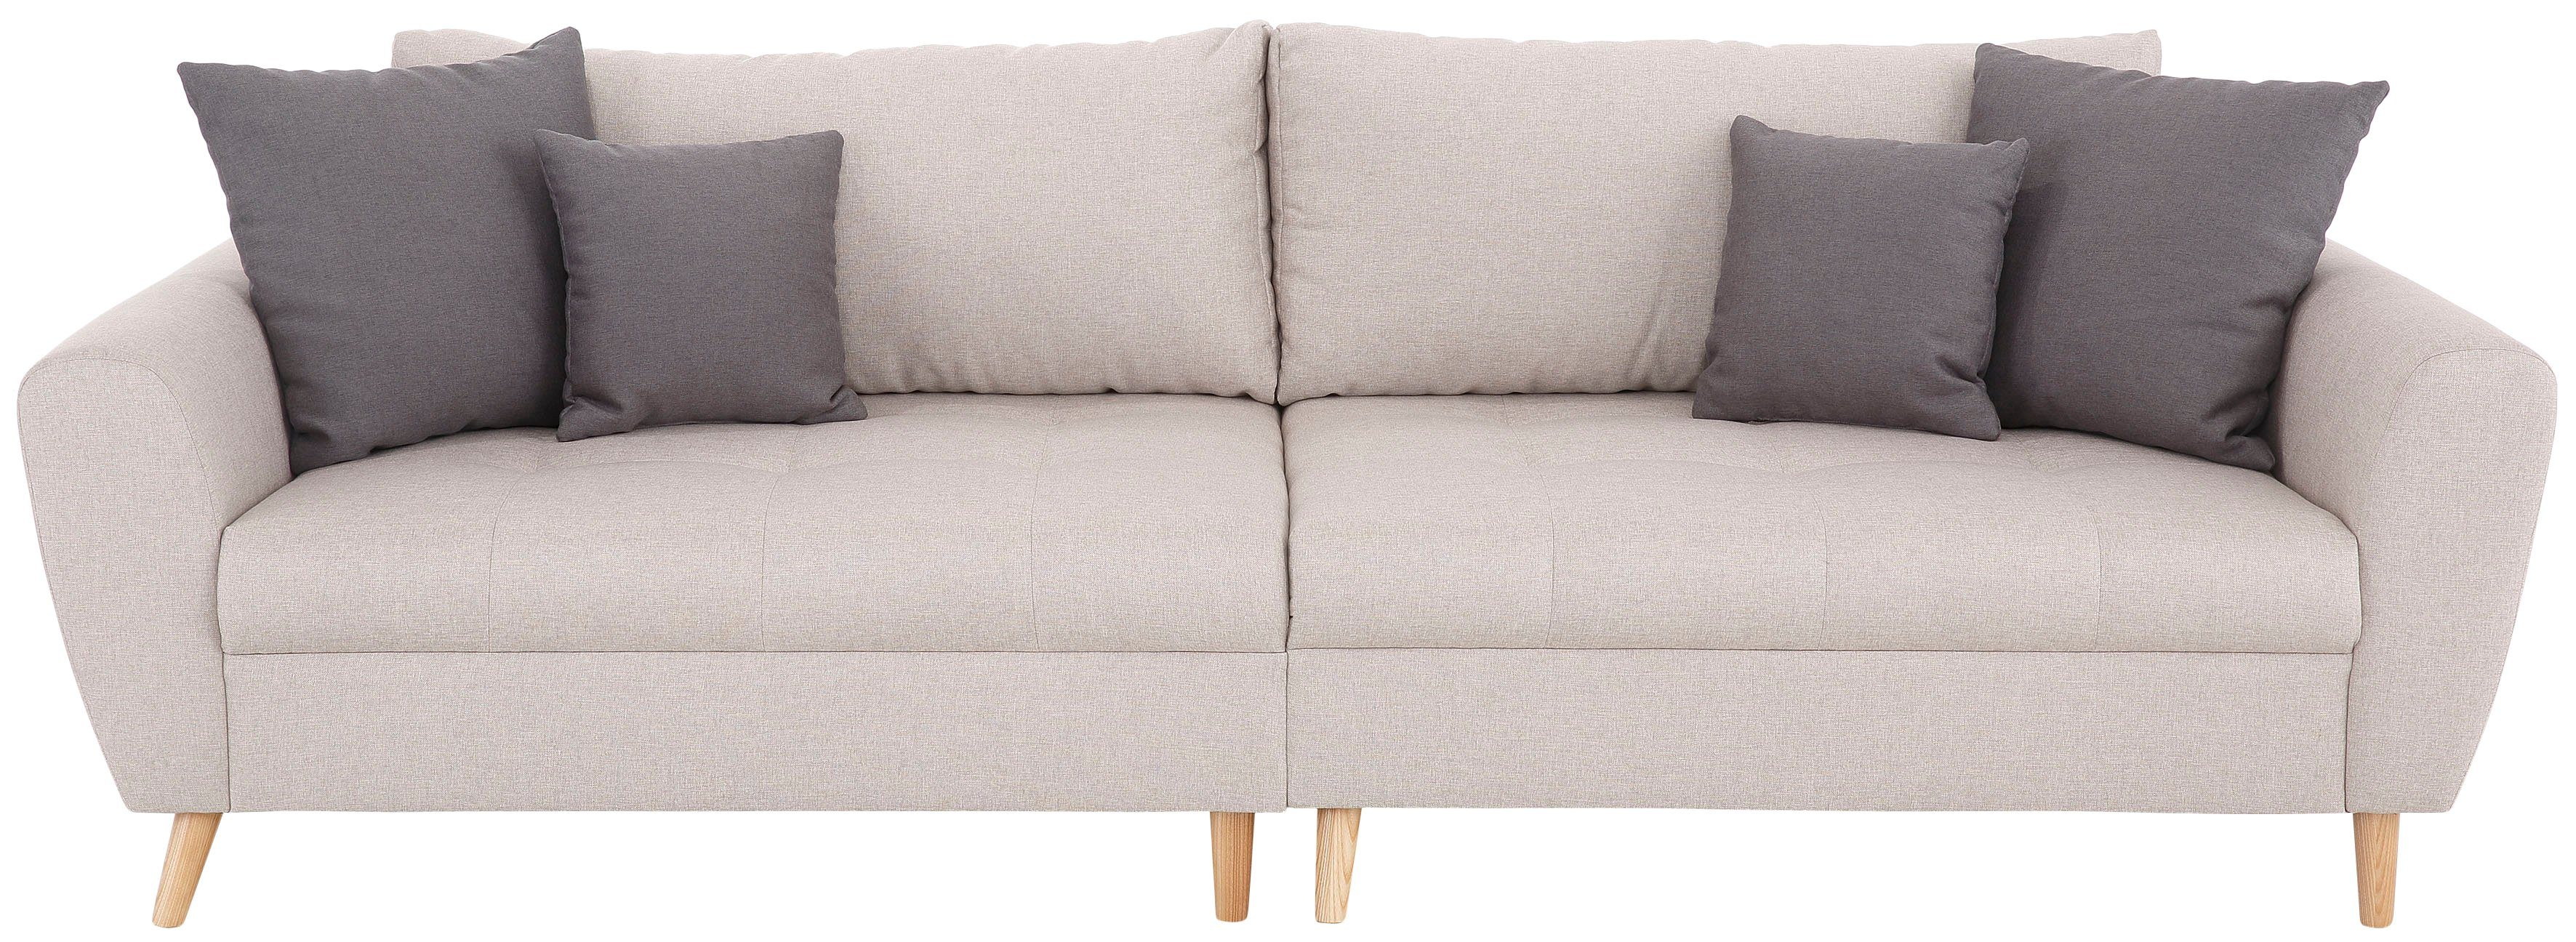 Home affaire Big-Sofa »Penelope Luxus«, mit besonders hochwertiger  Polsterung für bis zu 140 kg pro Sitzfläche